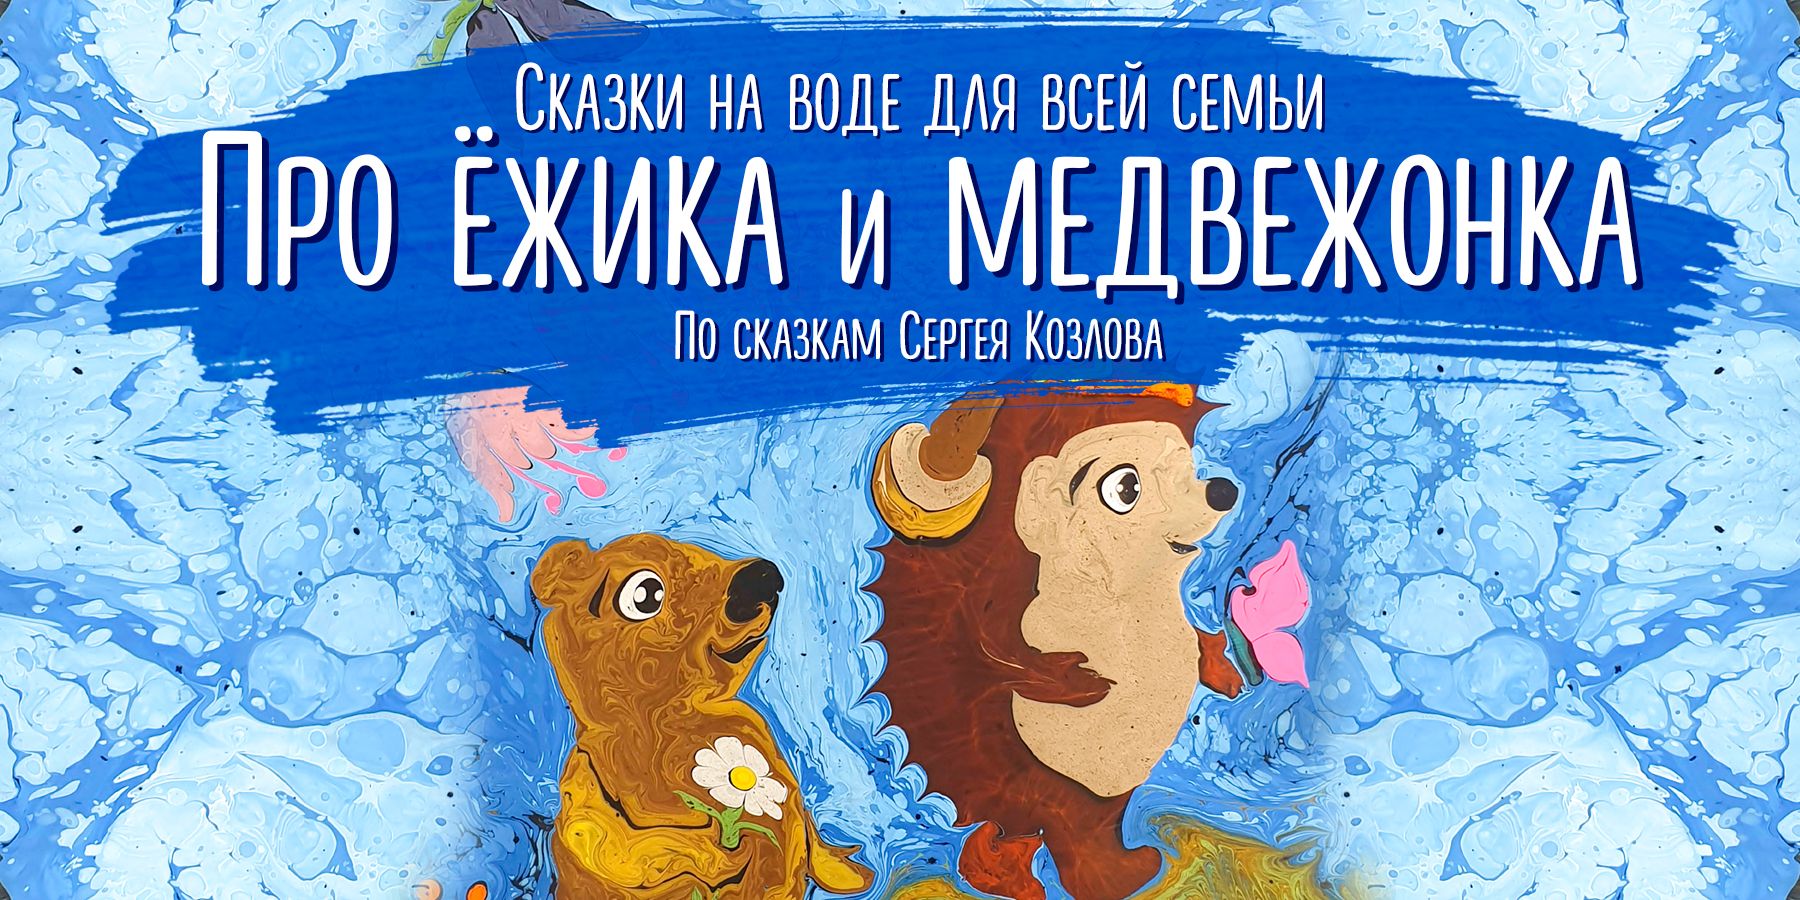 Сказка на воде "Про ежика и медвежонка"